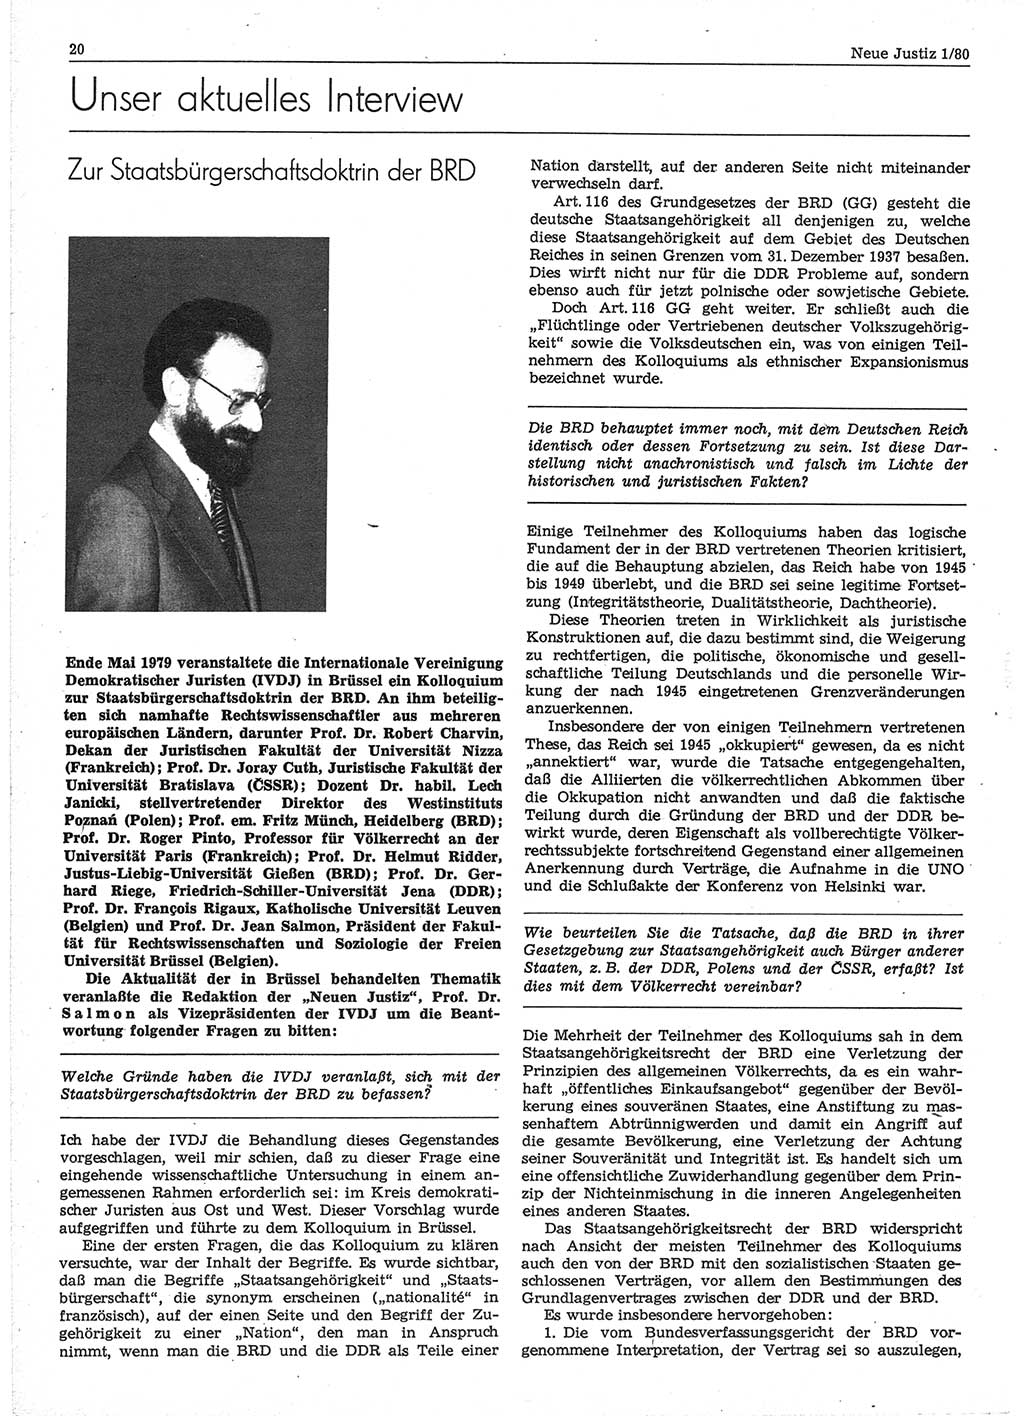 Neue Justiz (NJ), Zeitschrift für sozialistisches Recht und Gesetzlichkeit [Deutsche Demokratische Republik (DDR)], 34. Jahrgang 1980, Seite 20 (NJ DDR 1980, S. 20)